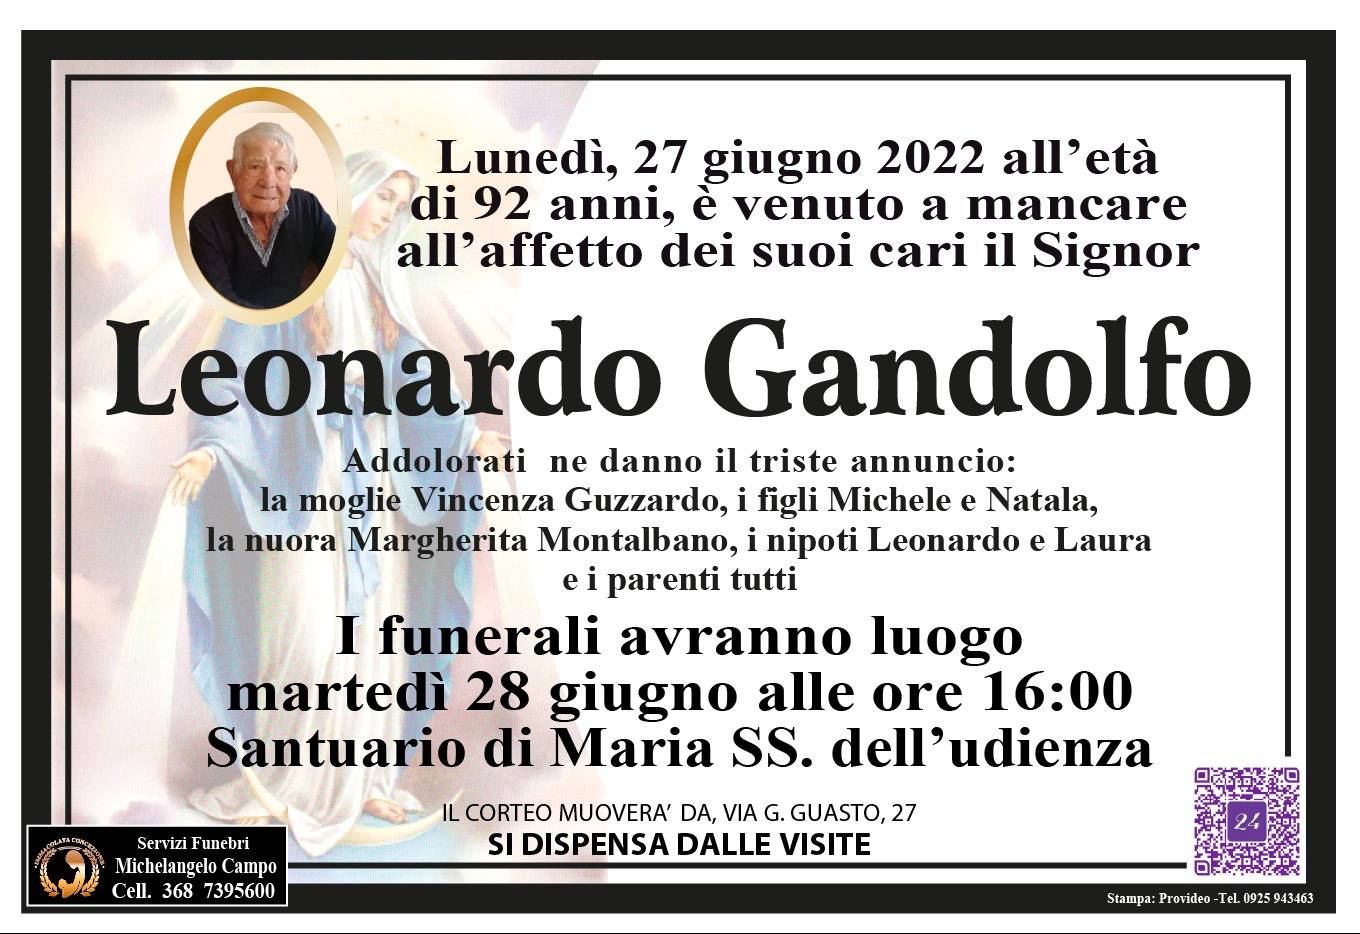 Leonardo Gandolfo